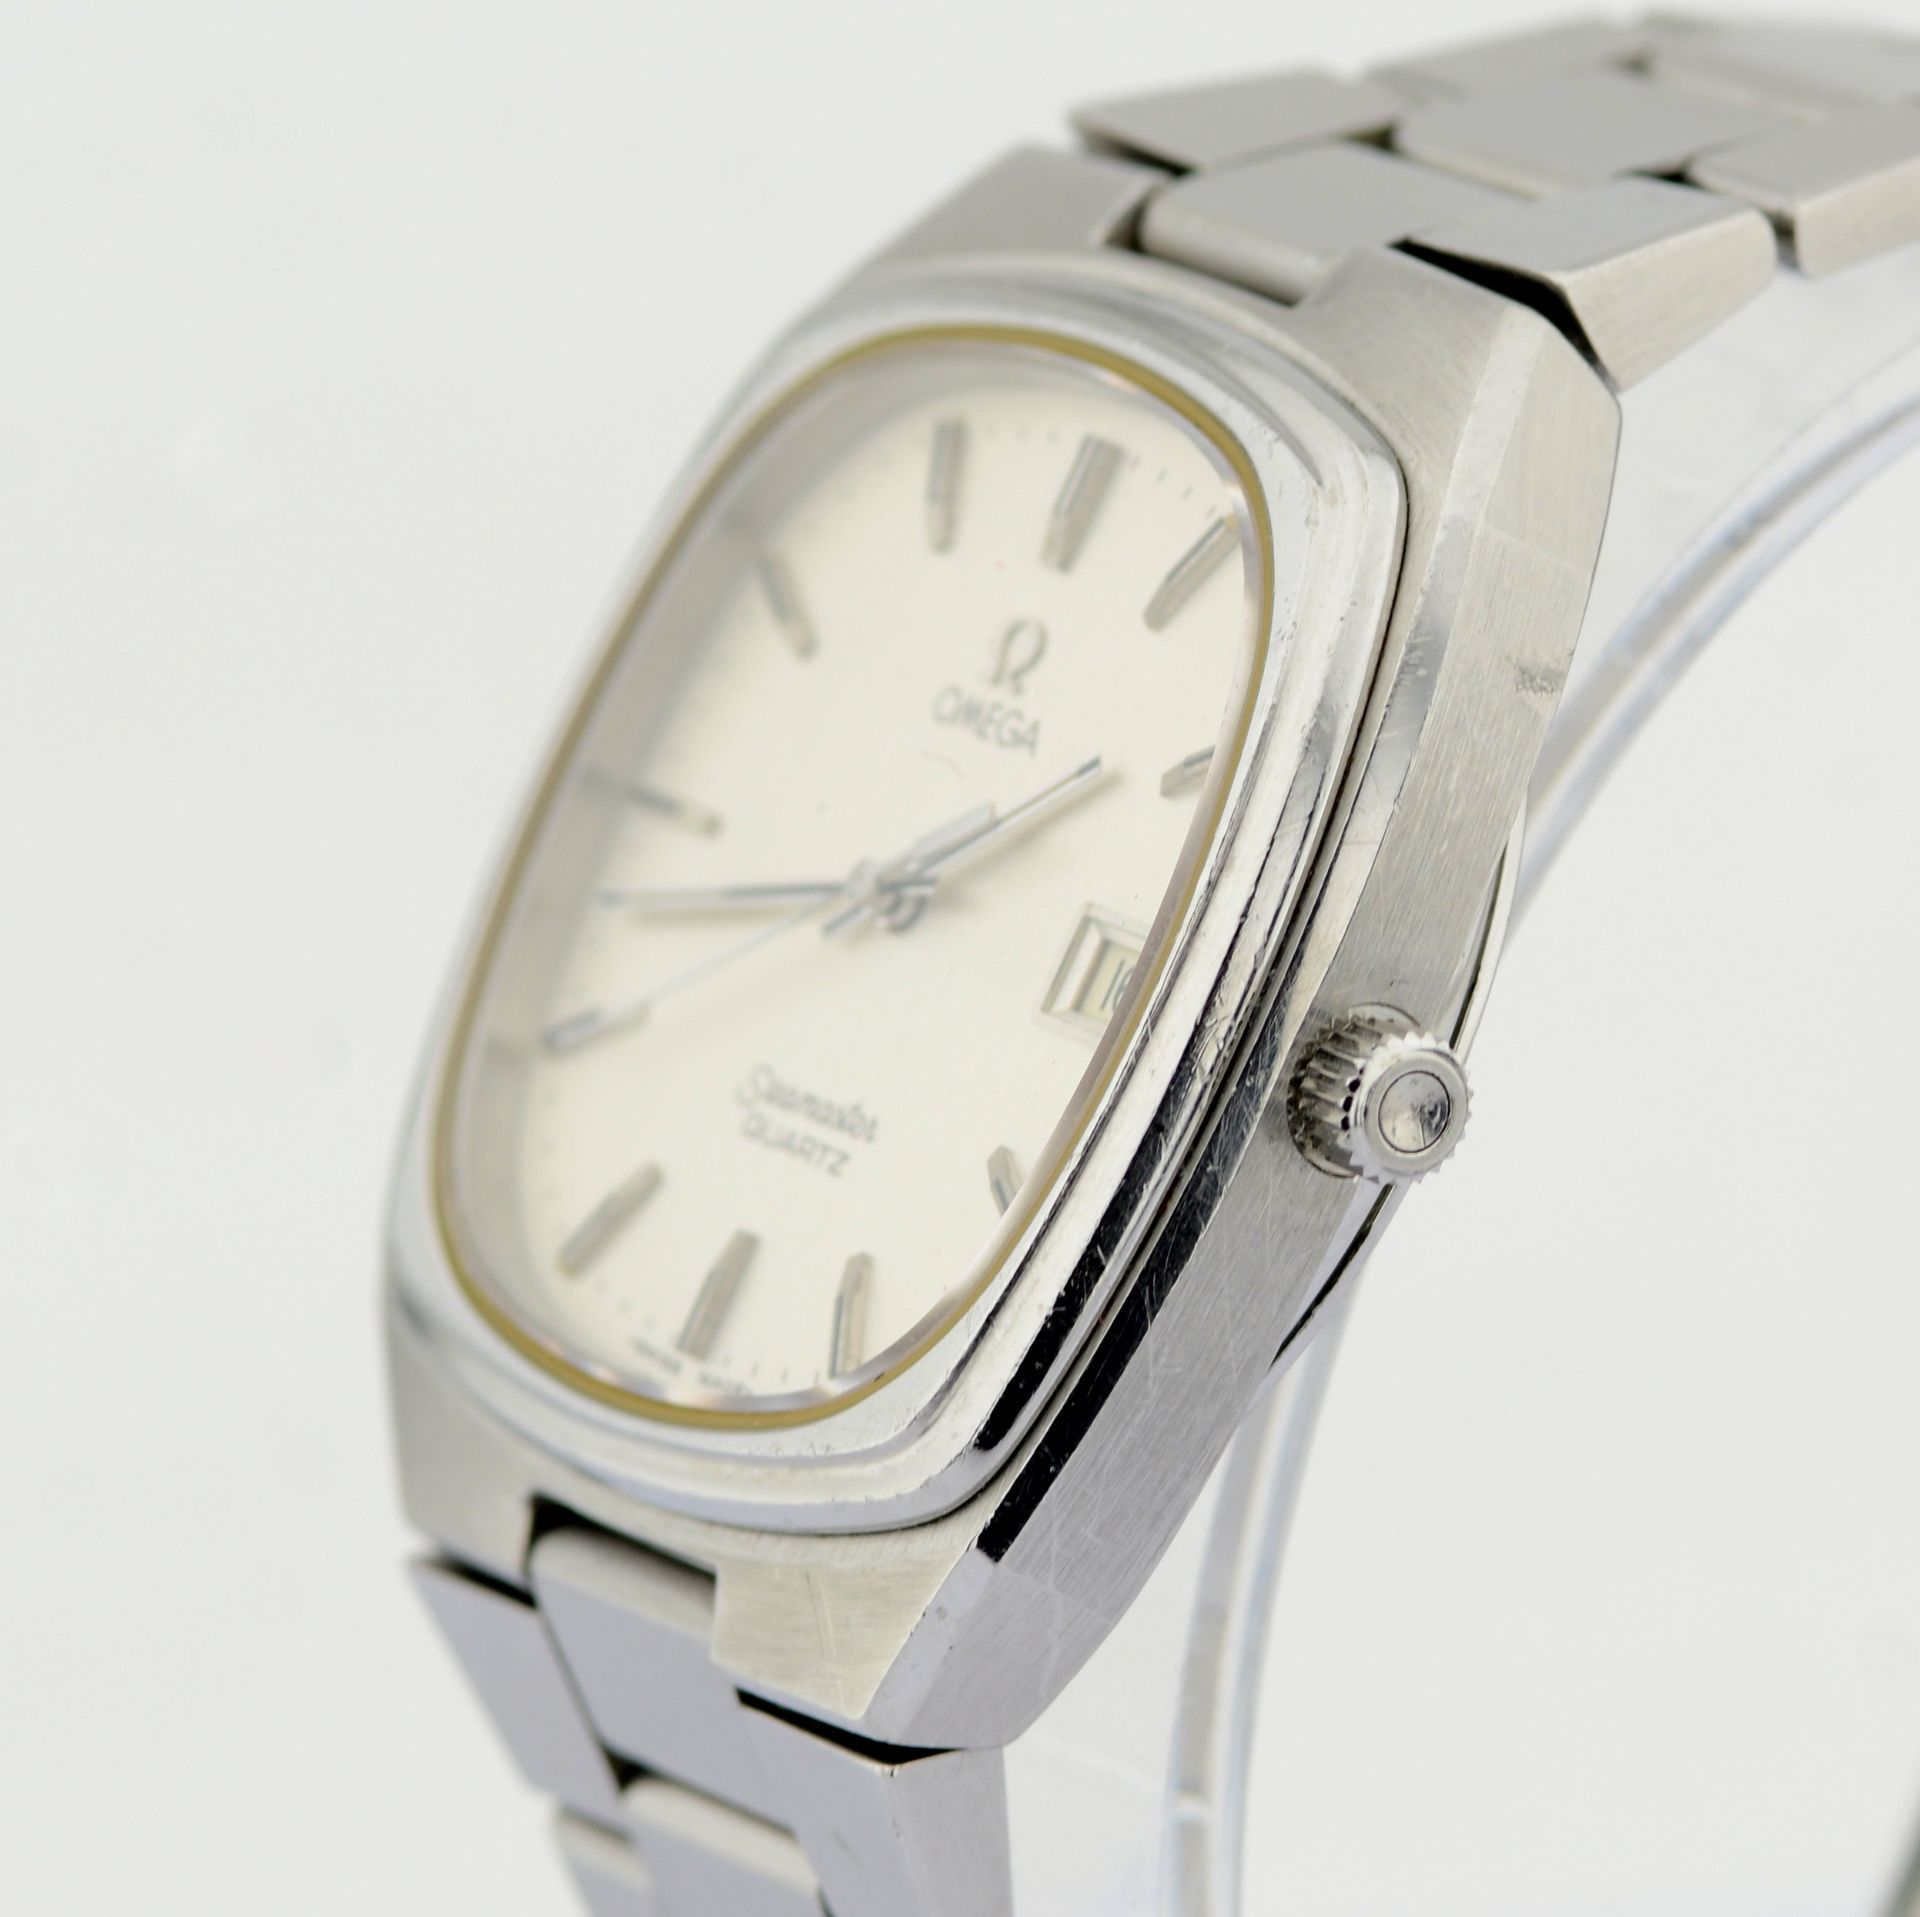 Omega / Seamaster Date 35 mm - Gentlmen's Steel Wrist Watch - Image 2 of 7